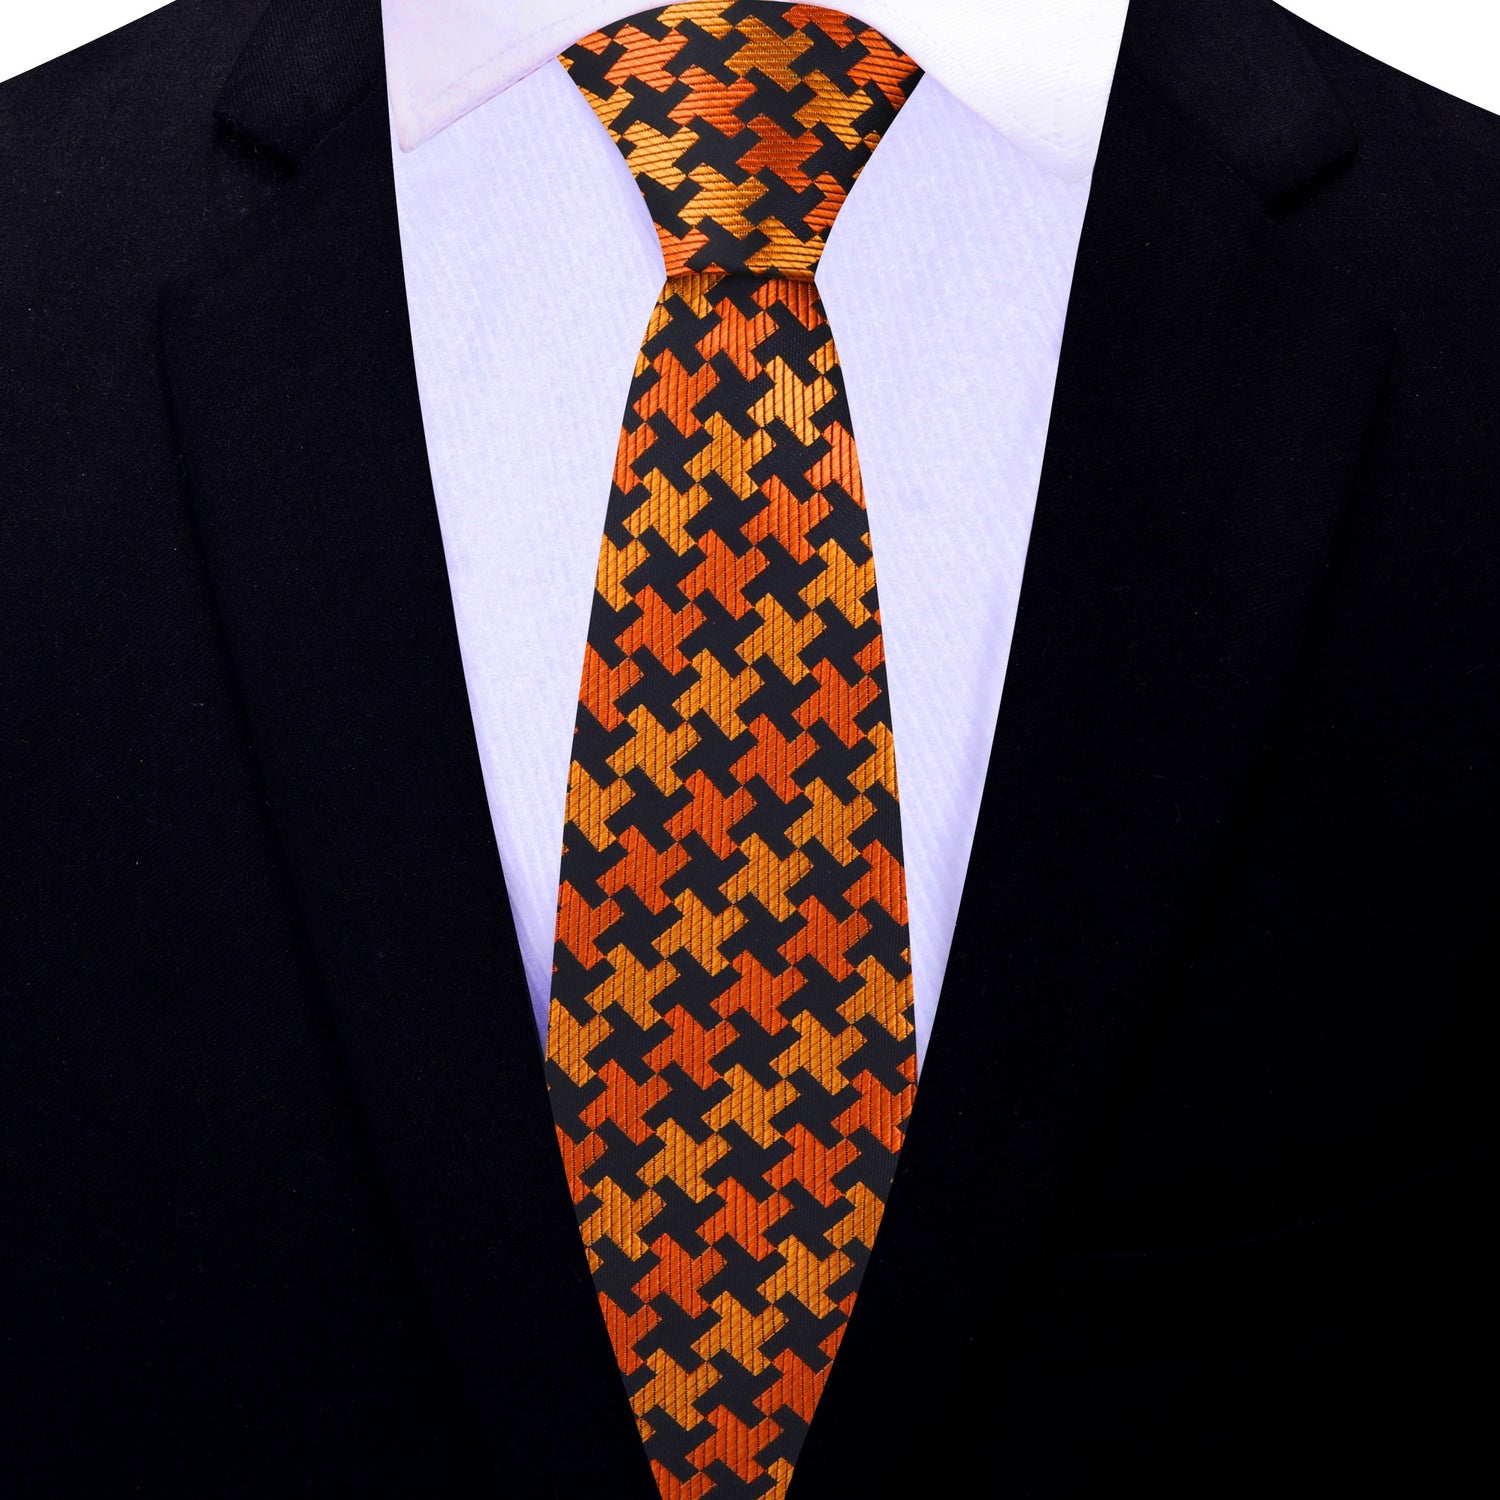 Thin Tie: Orange, Yellow, Black Hounds Tooth Necktie 